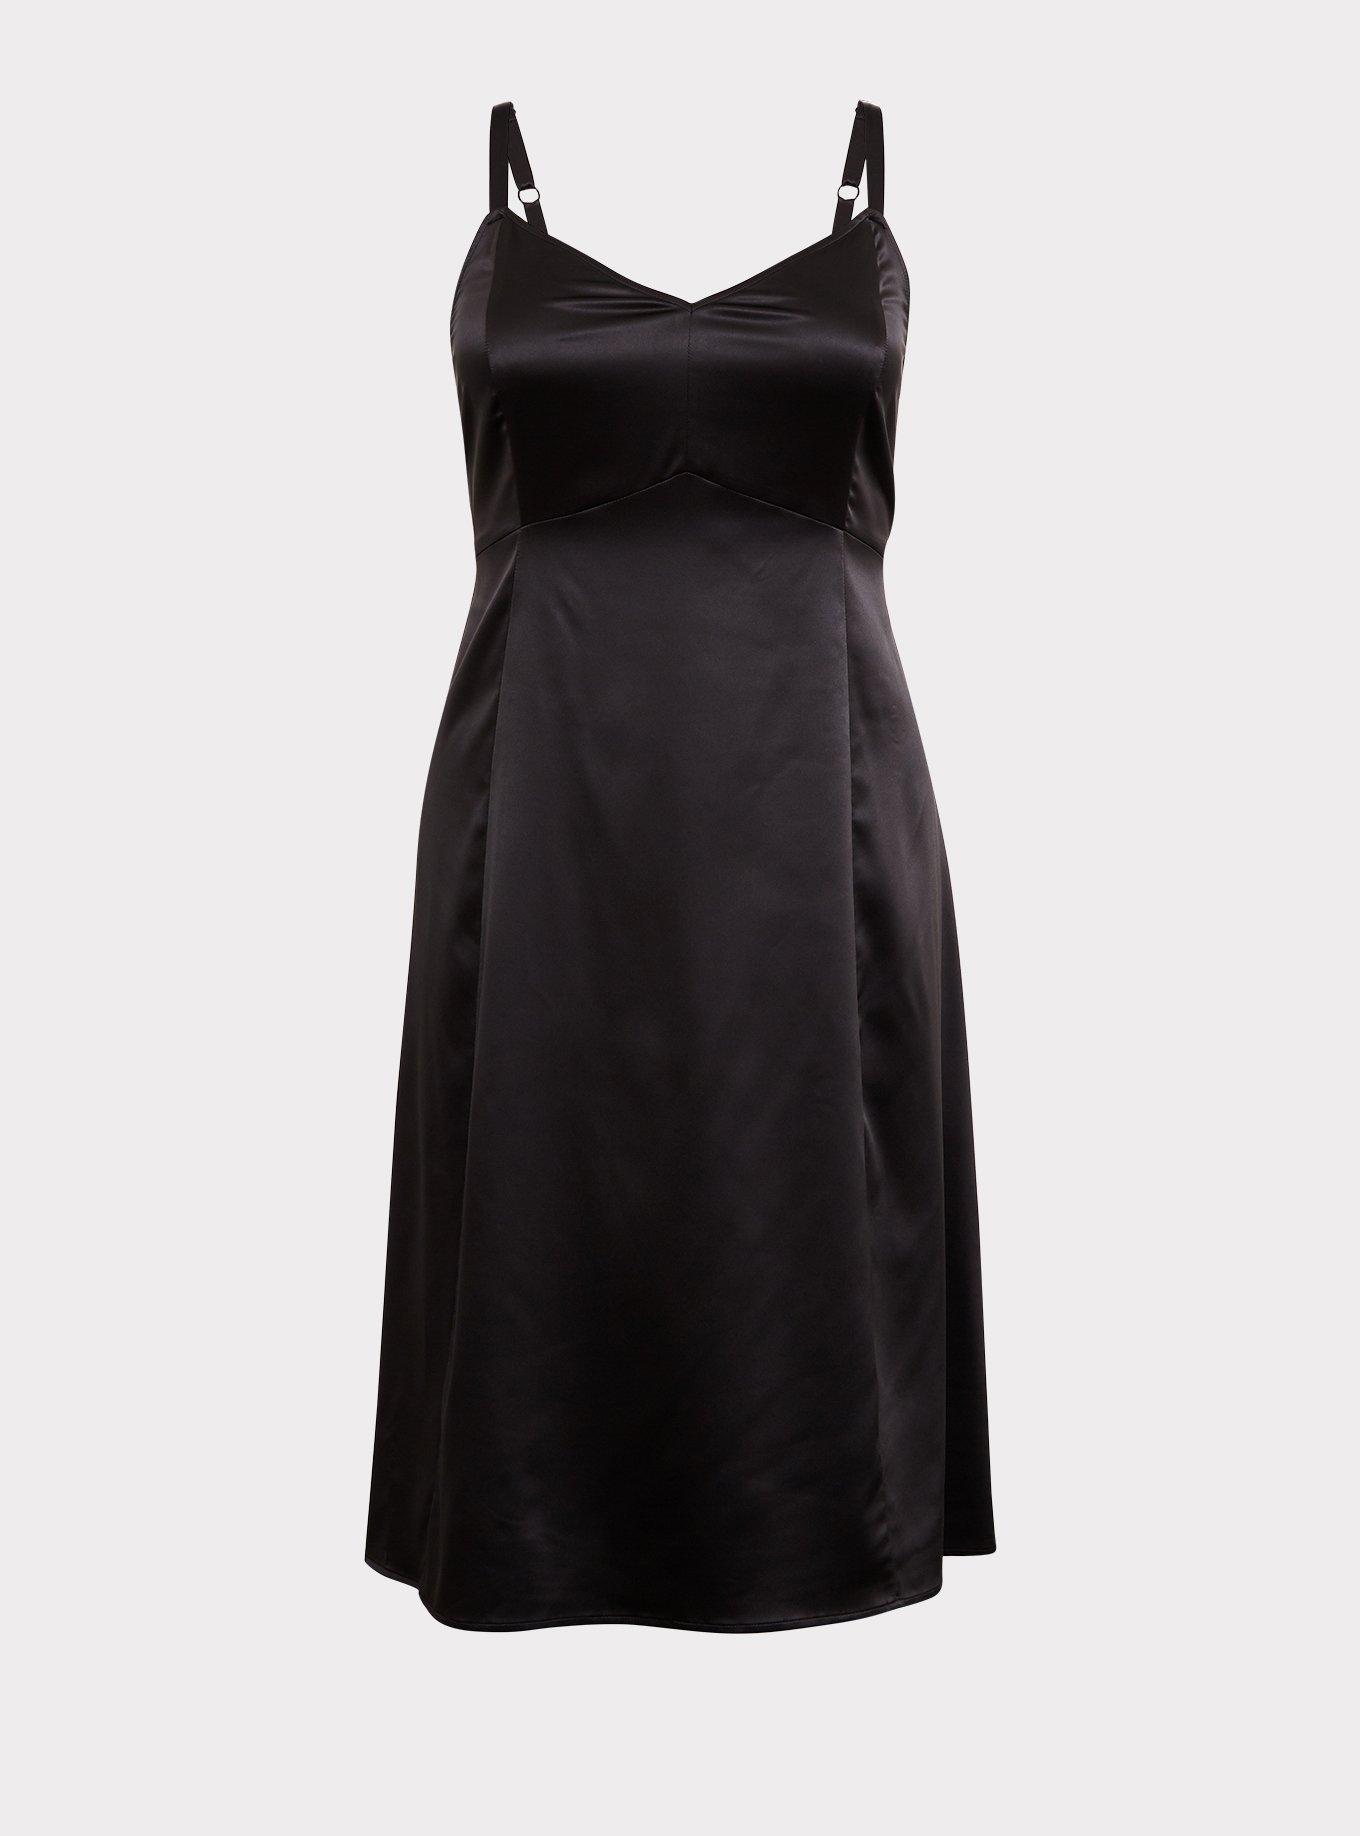 Forever 21 Women's Satin Corset Lingerie Slip Dress in Black Small